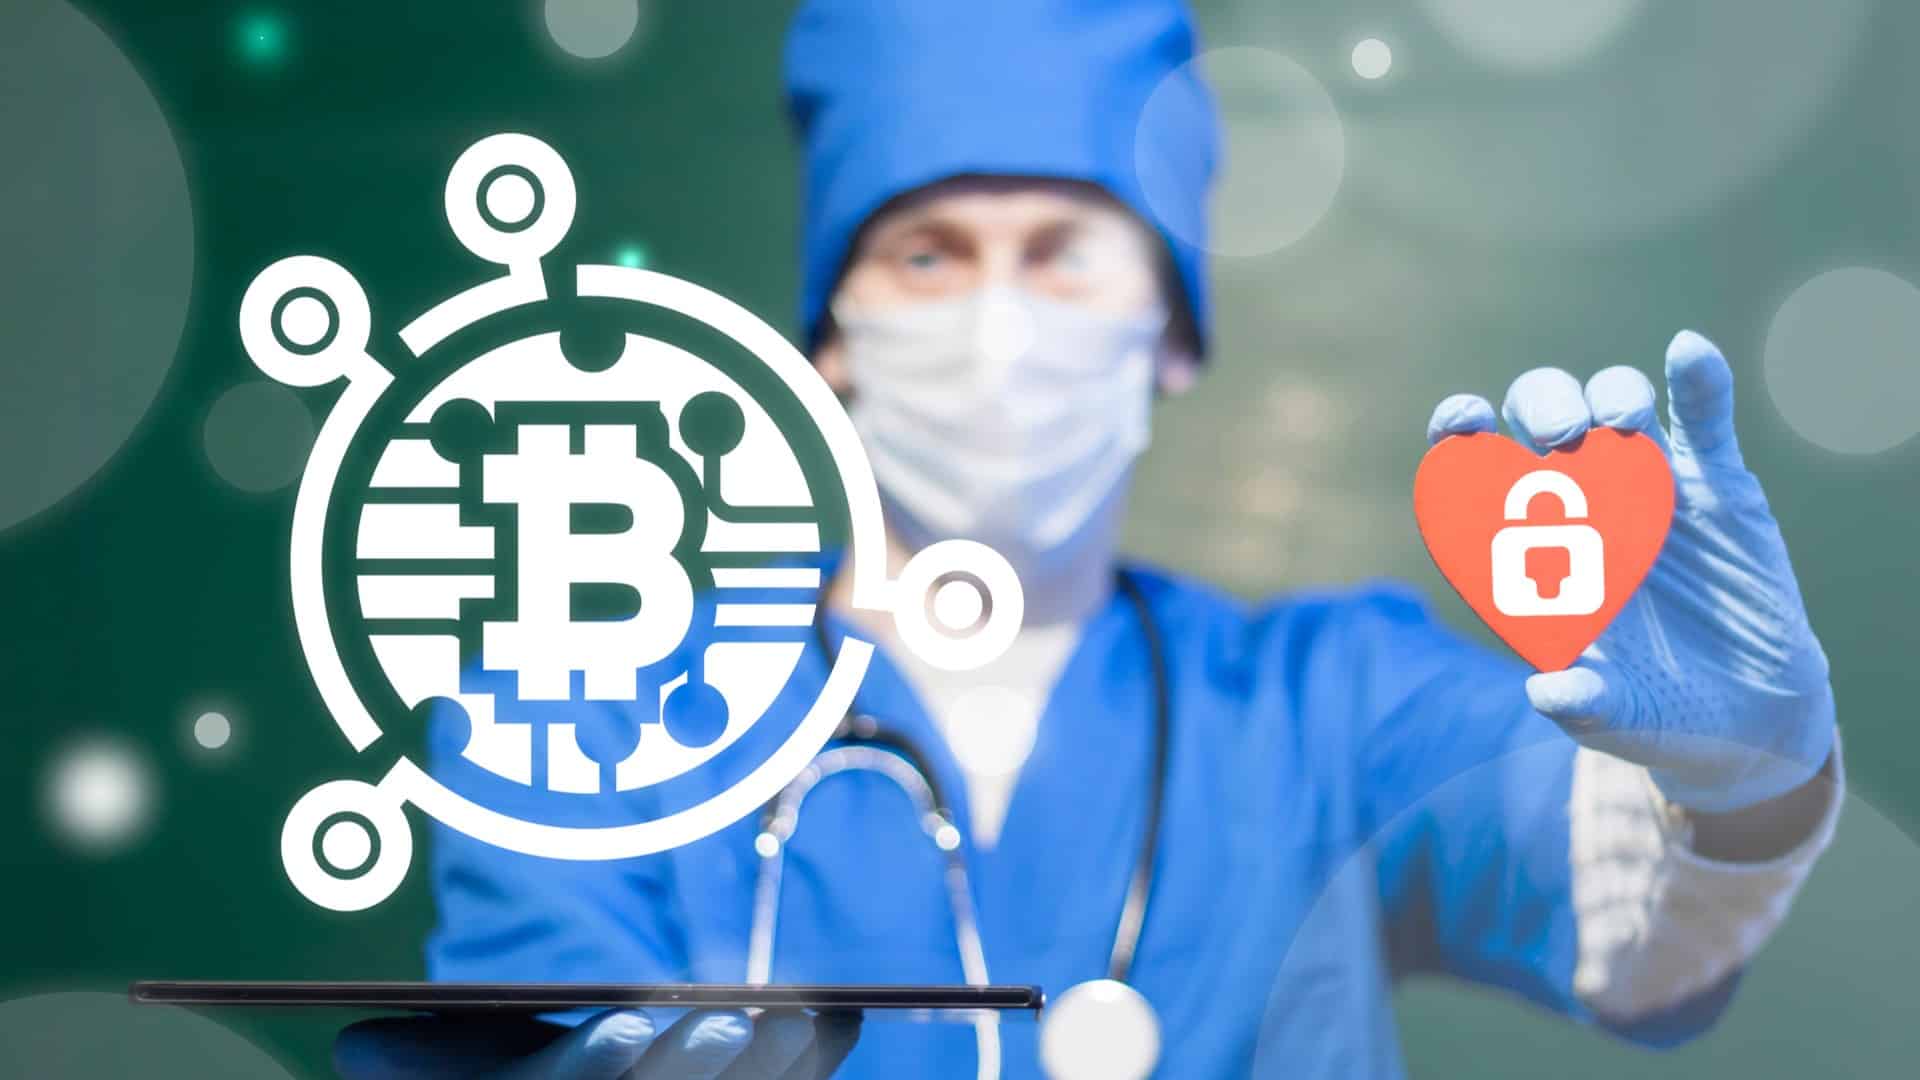 EMBRAPII investe em blockchain de dados médicos no Brasil